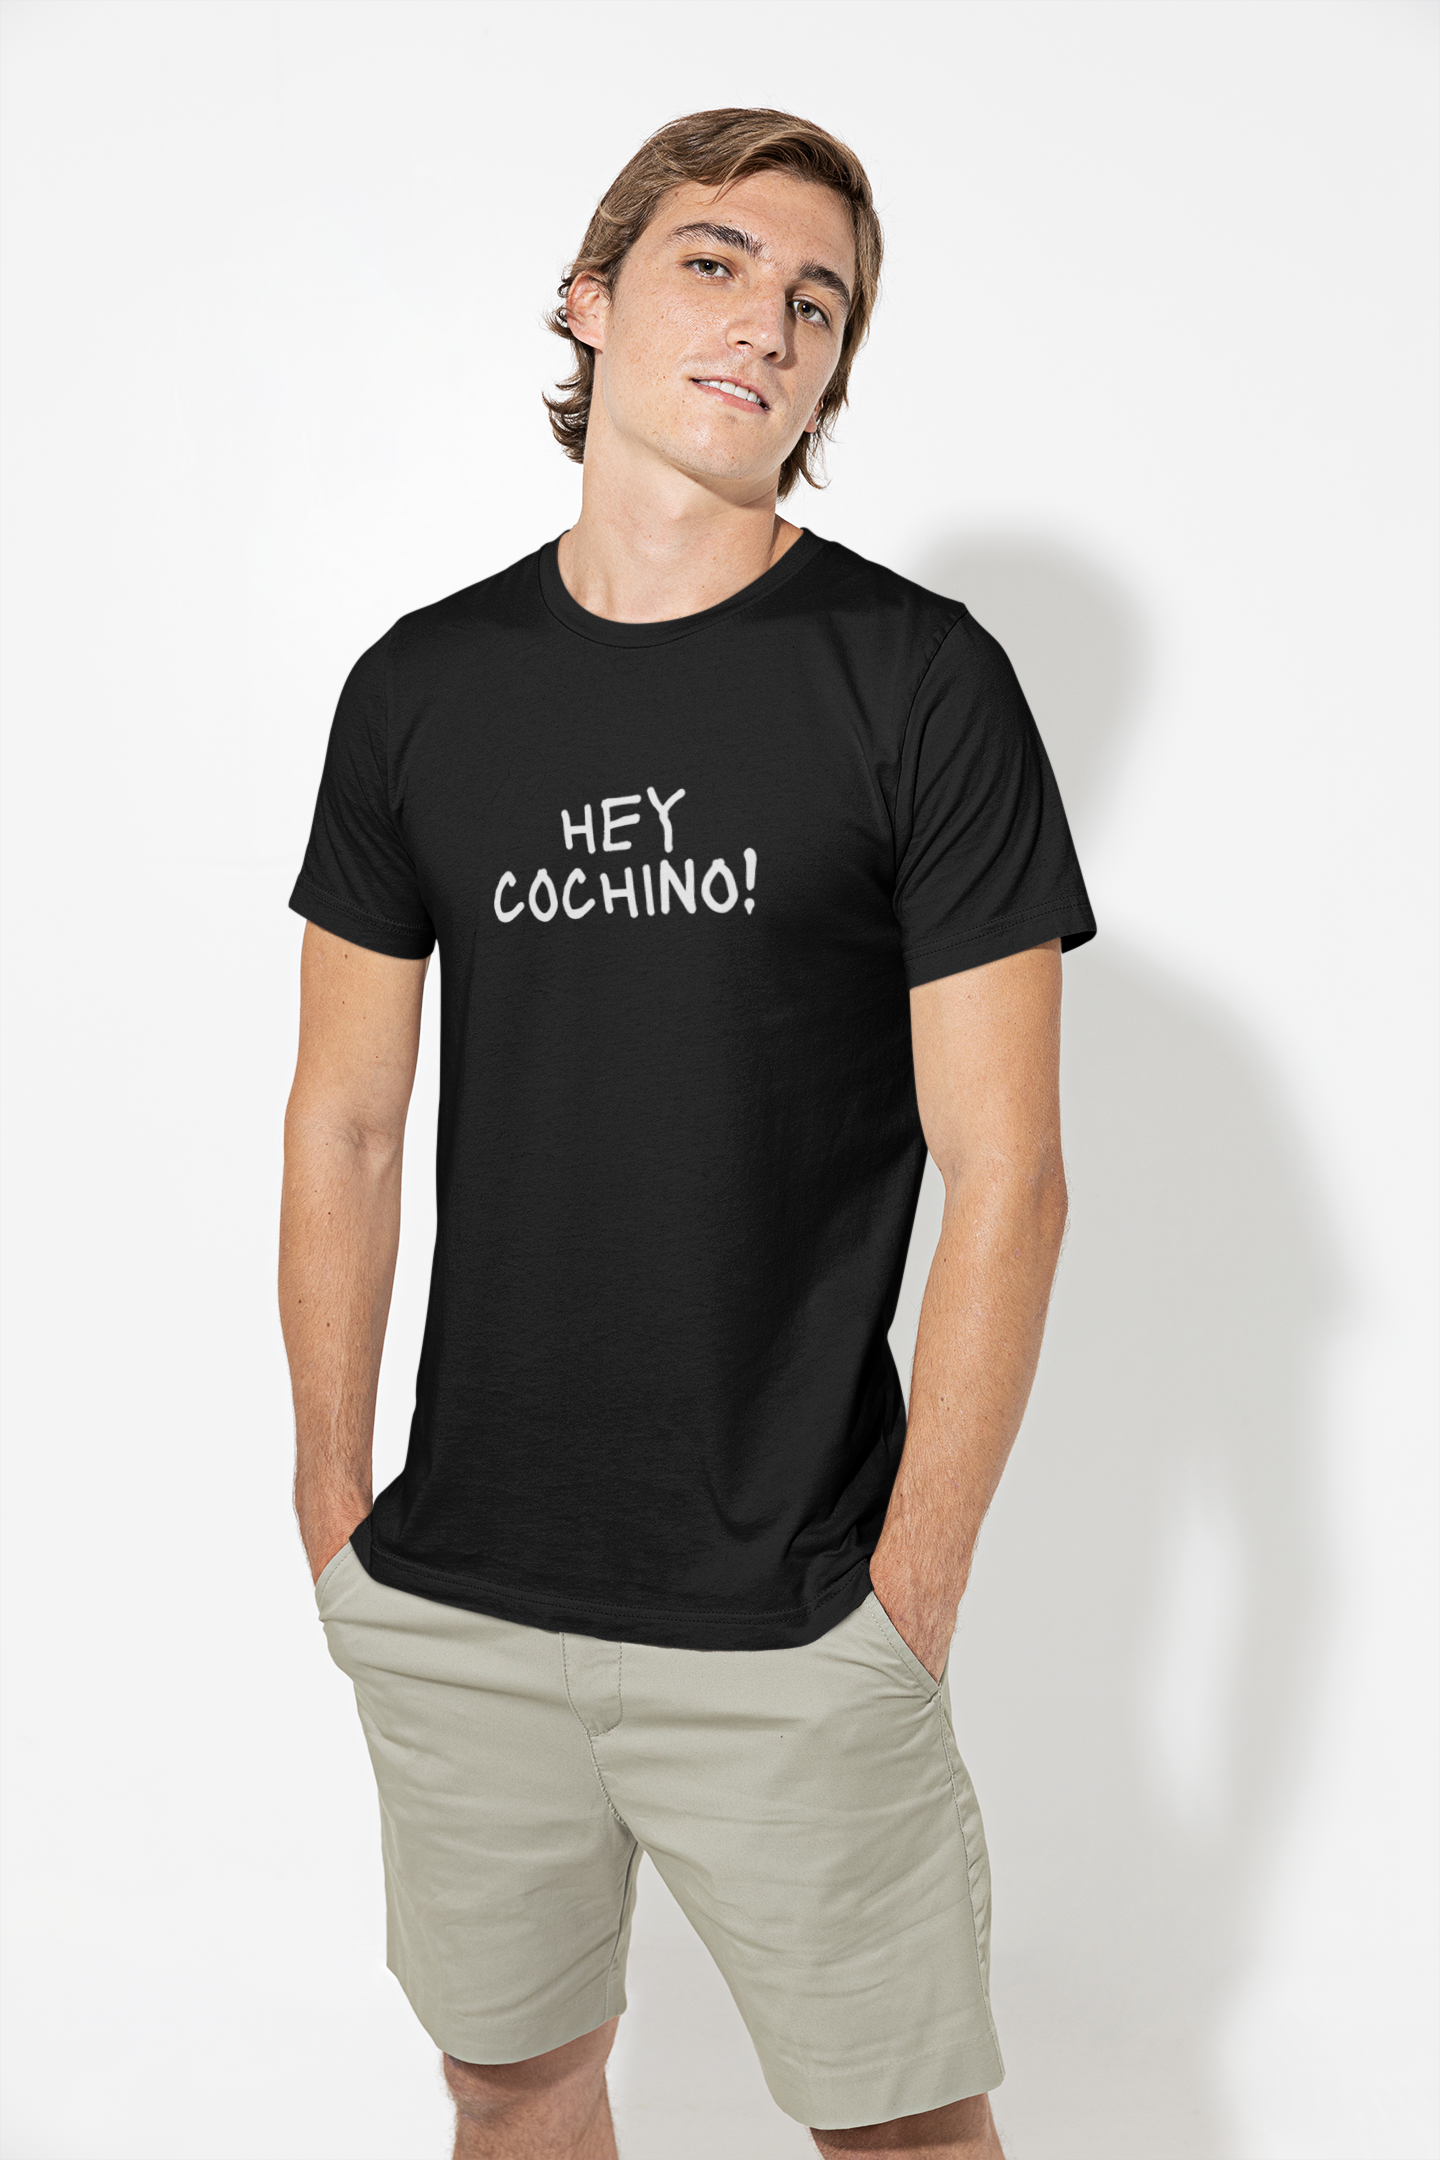 1 Hey Cochino - Hilarious Obnoxious Men's Shirt!